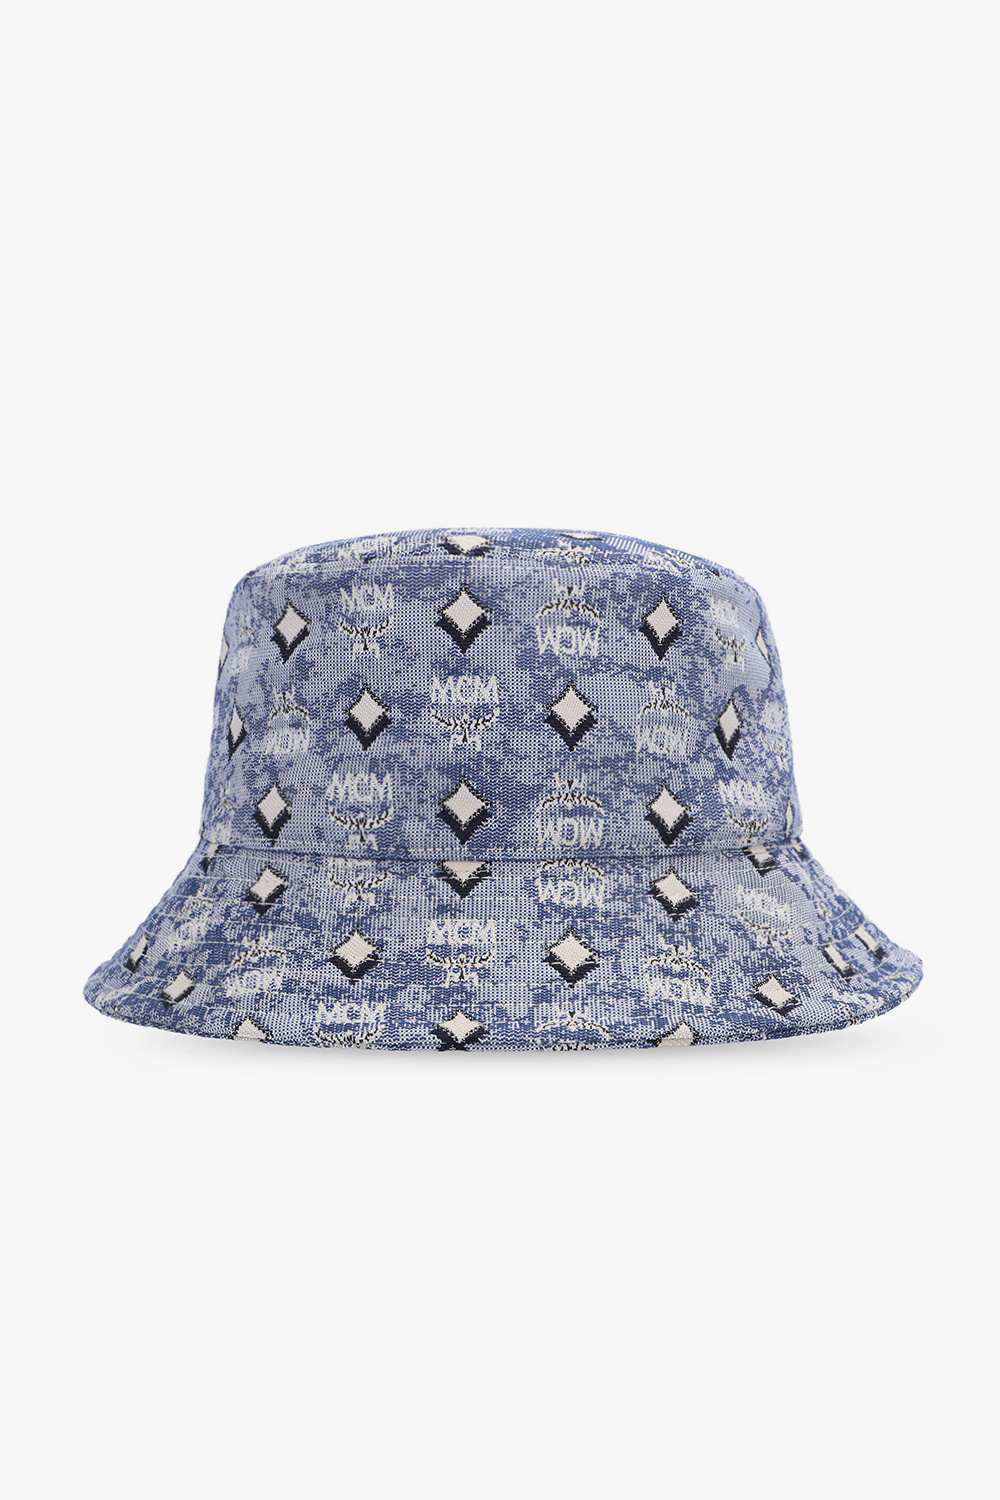 - Australia Seattle IetpShops Fit MCM Defender Hat Patterned bucket Blue Flex - Fanatics Kraken hat